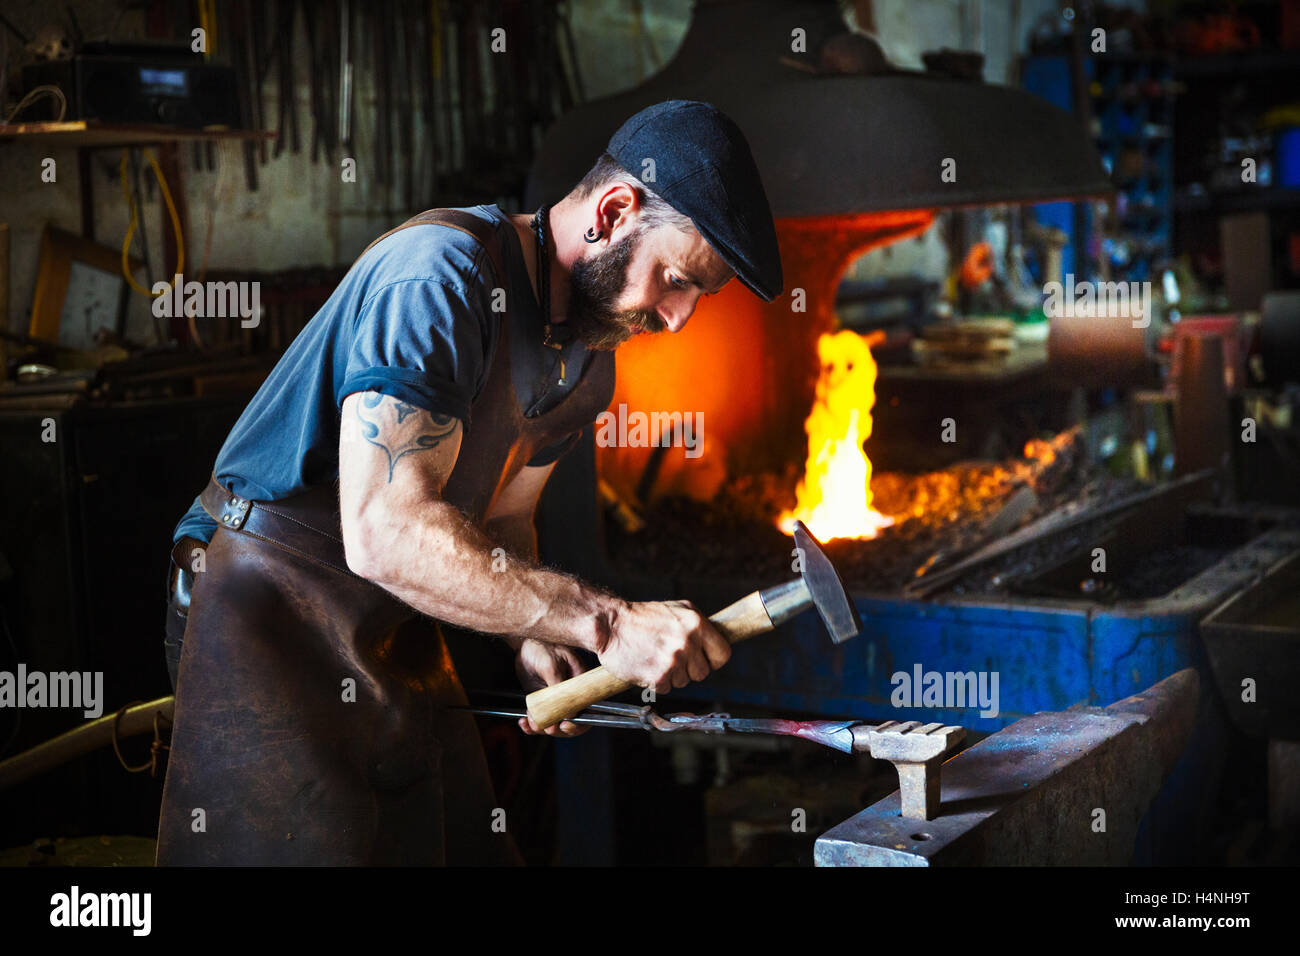 Un forgeron utilise des outils complexes pour élaborer un cône de métal chaud rouge sur l'enclume dans un atelier. Banque D'Images